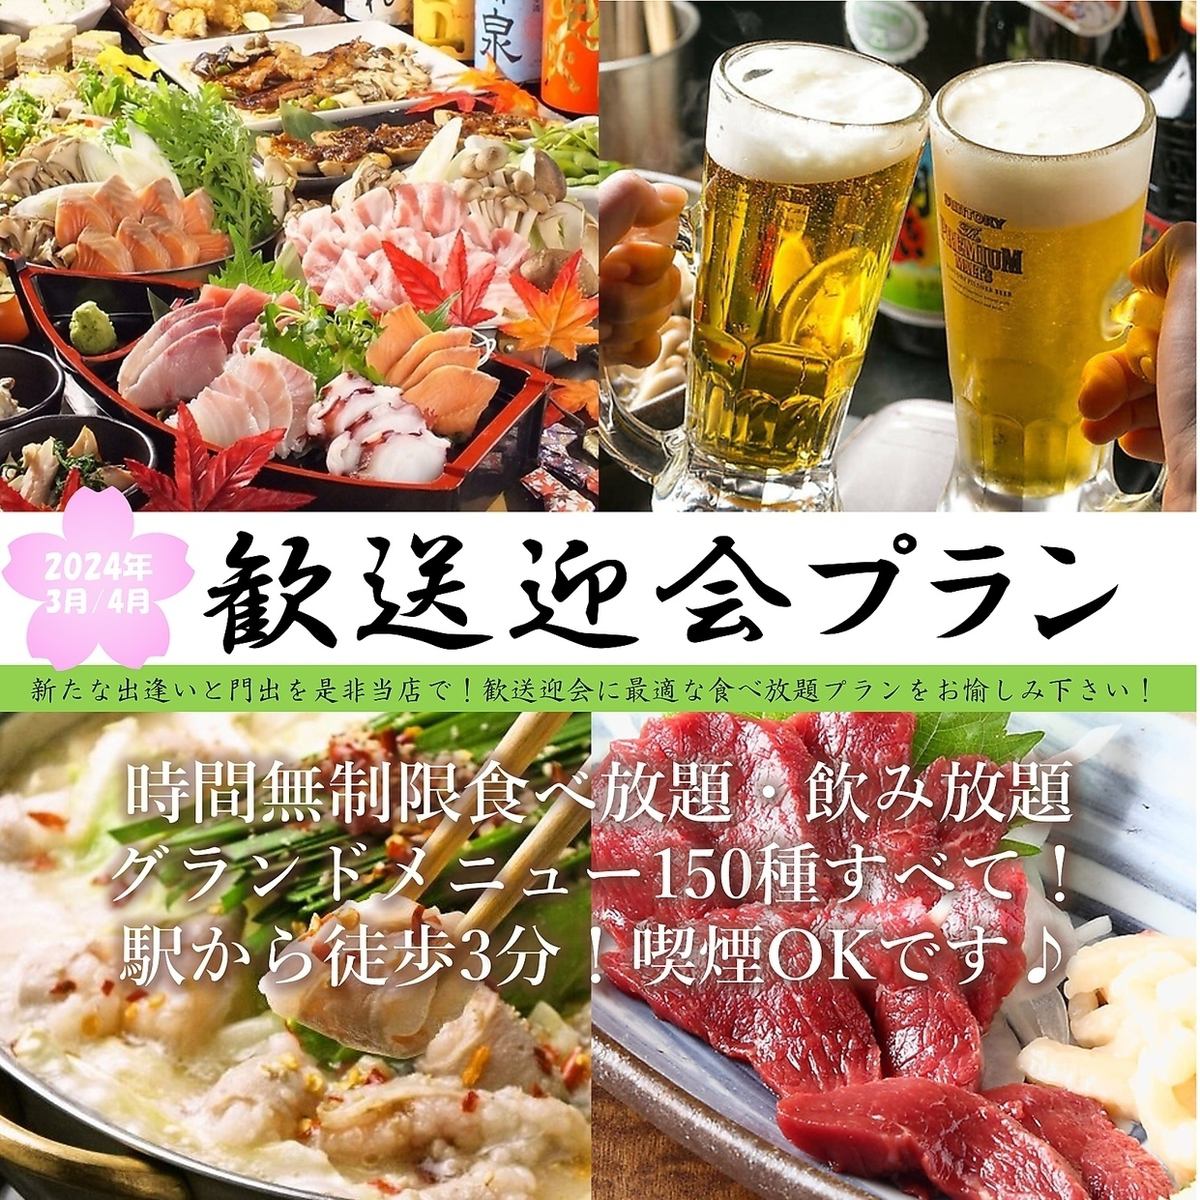 从横滨站步行3分钟◎ 150种菜品、无时间限制的吃喝玩乐居酒屋！